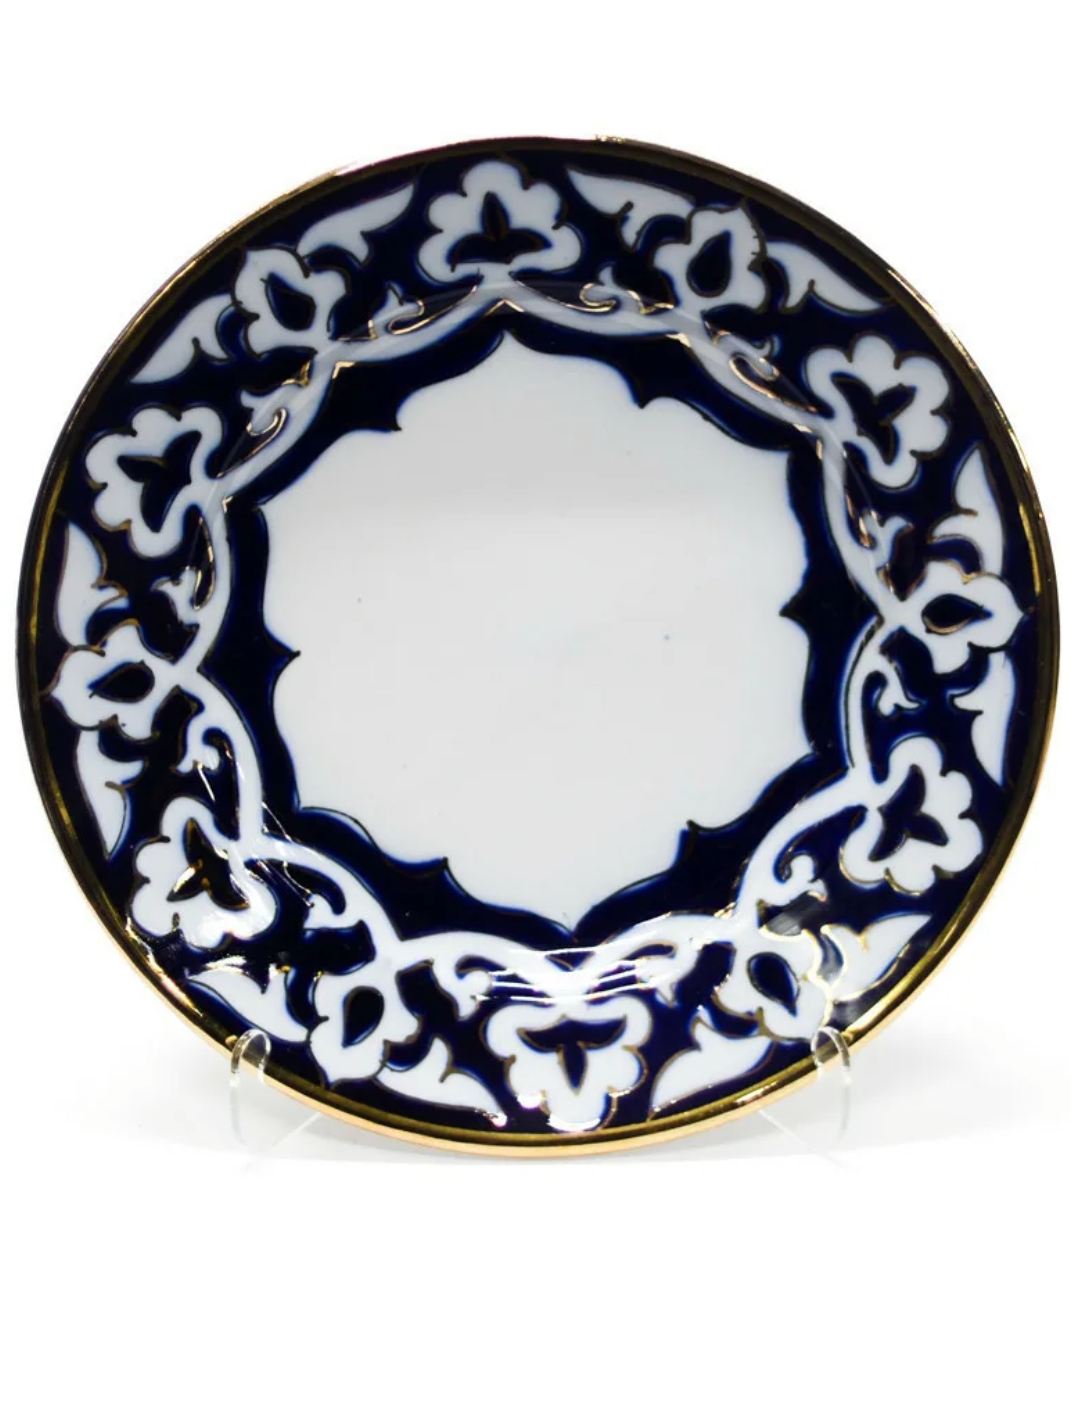 Посуда хлопок. Узбекская посуда пахта Гулли. Тарелка "пахта" керамика, 28 см.. Узбекская посуда пахта тарелка. Узбекская посуда Риштанская керамика.